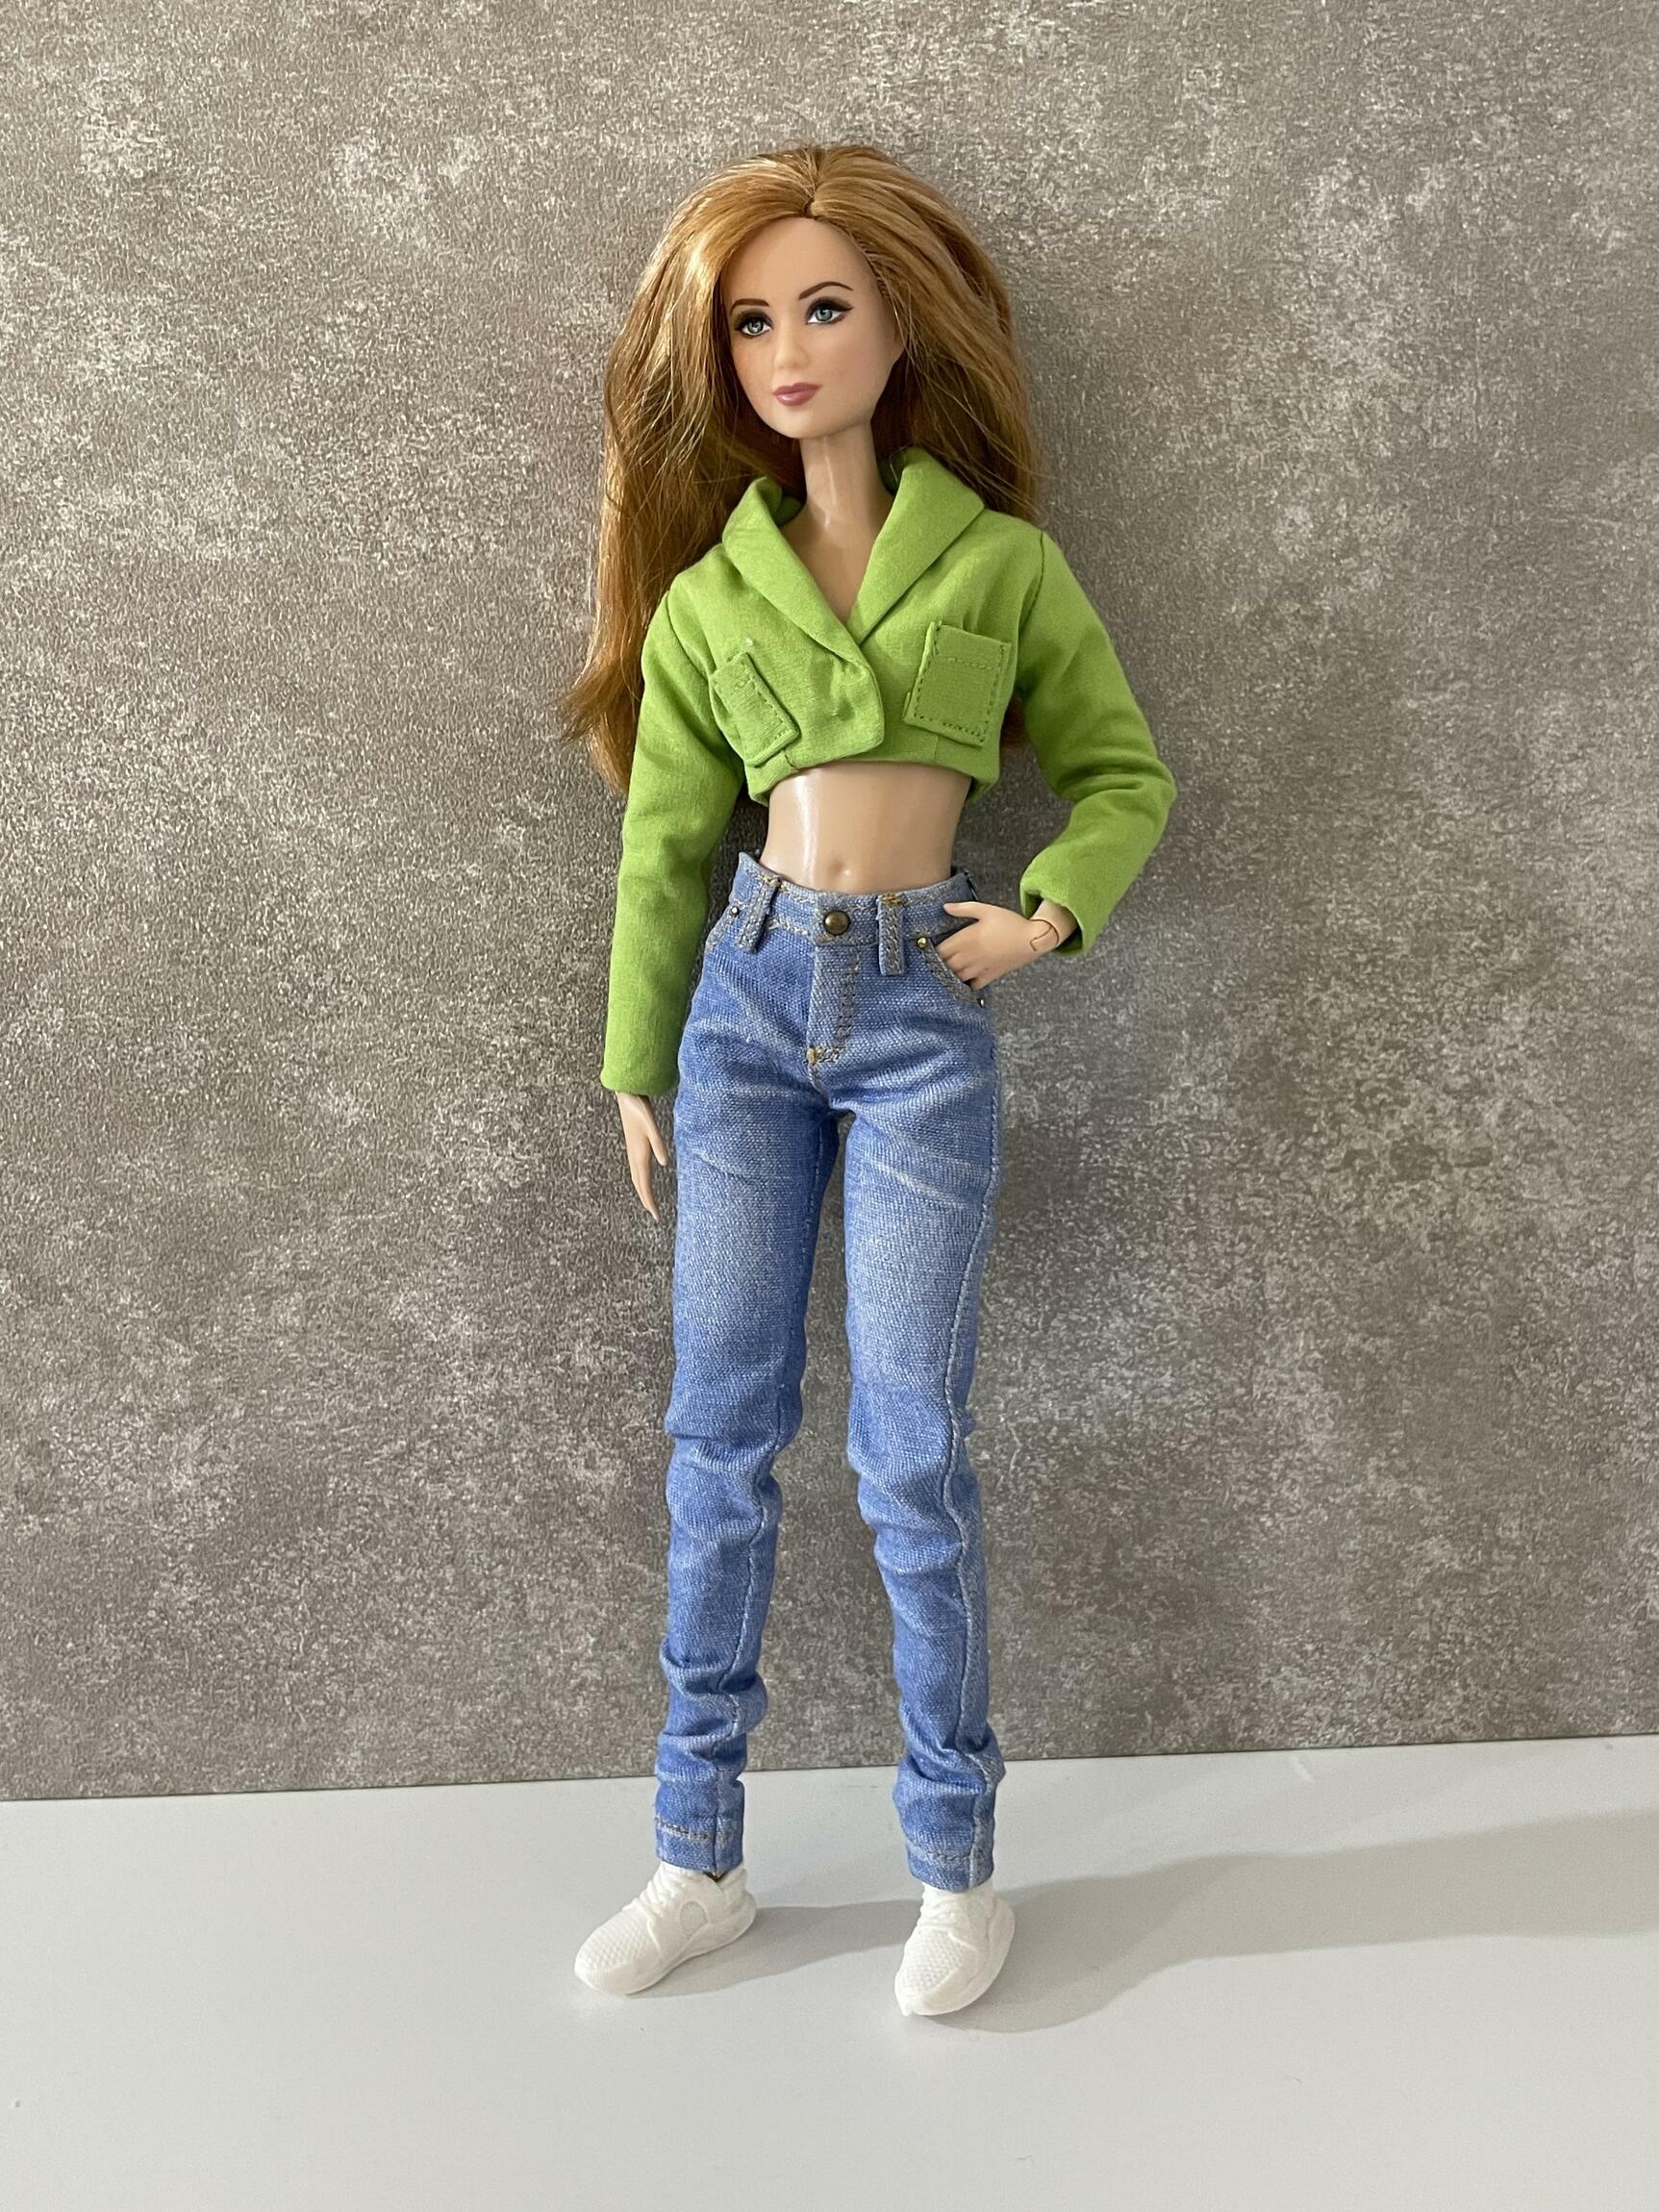 Comprar Calça jeans realista (Pré Venda) - a partir de R$99,00 - Aela Doll  Store